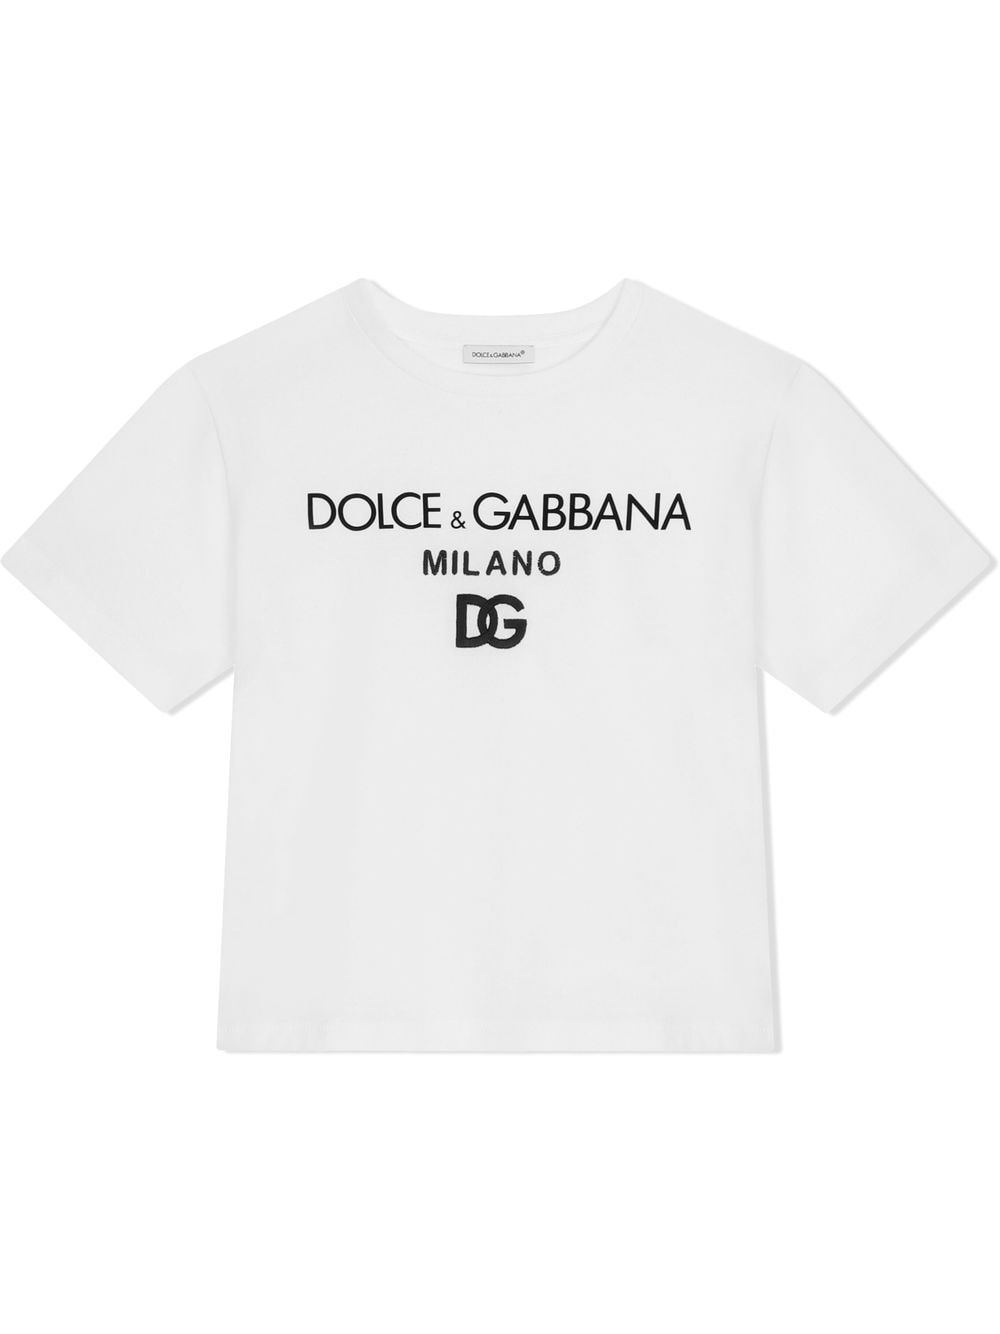 Dolce & Gabbana Kids DG Milano embroidered T-shirt - White von Dolce & Gabbana Kids